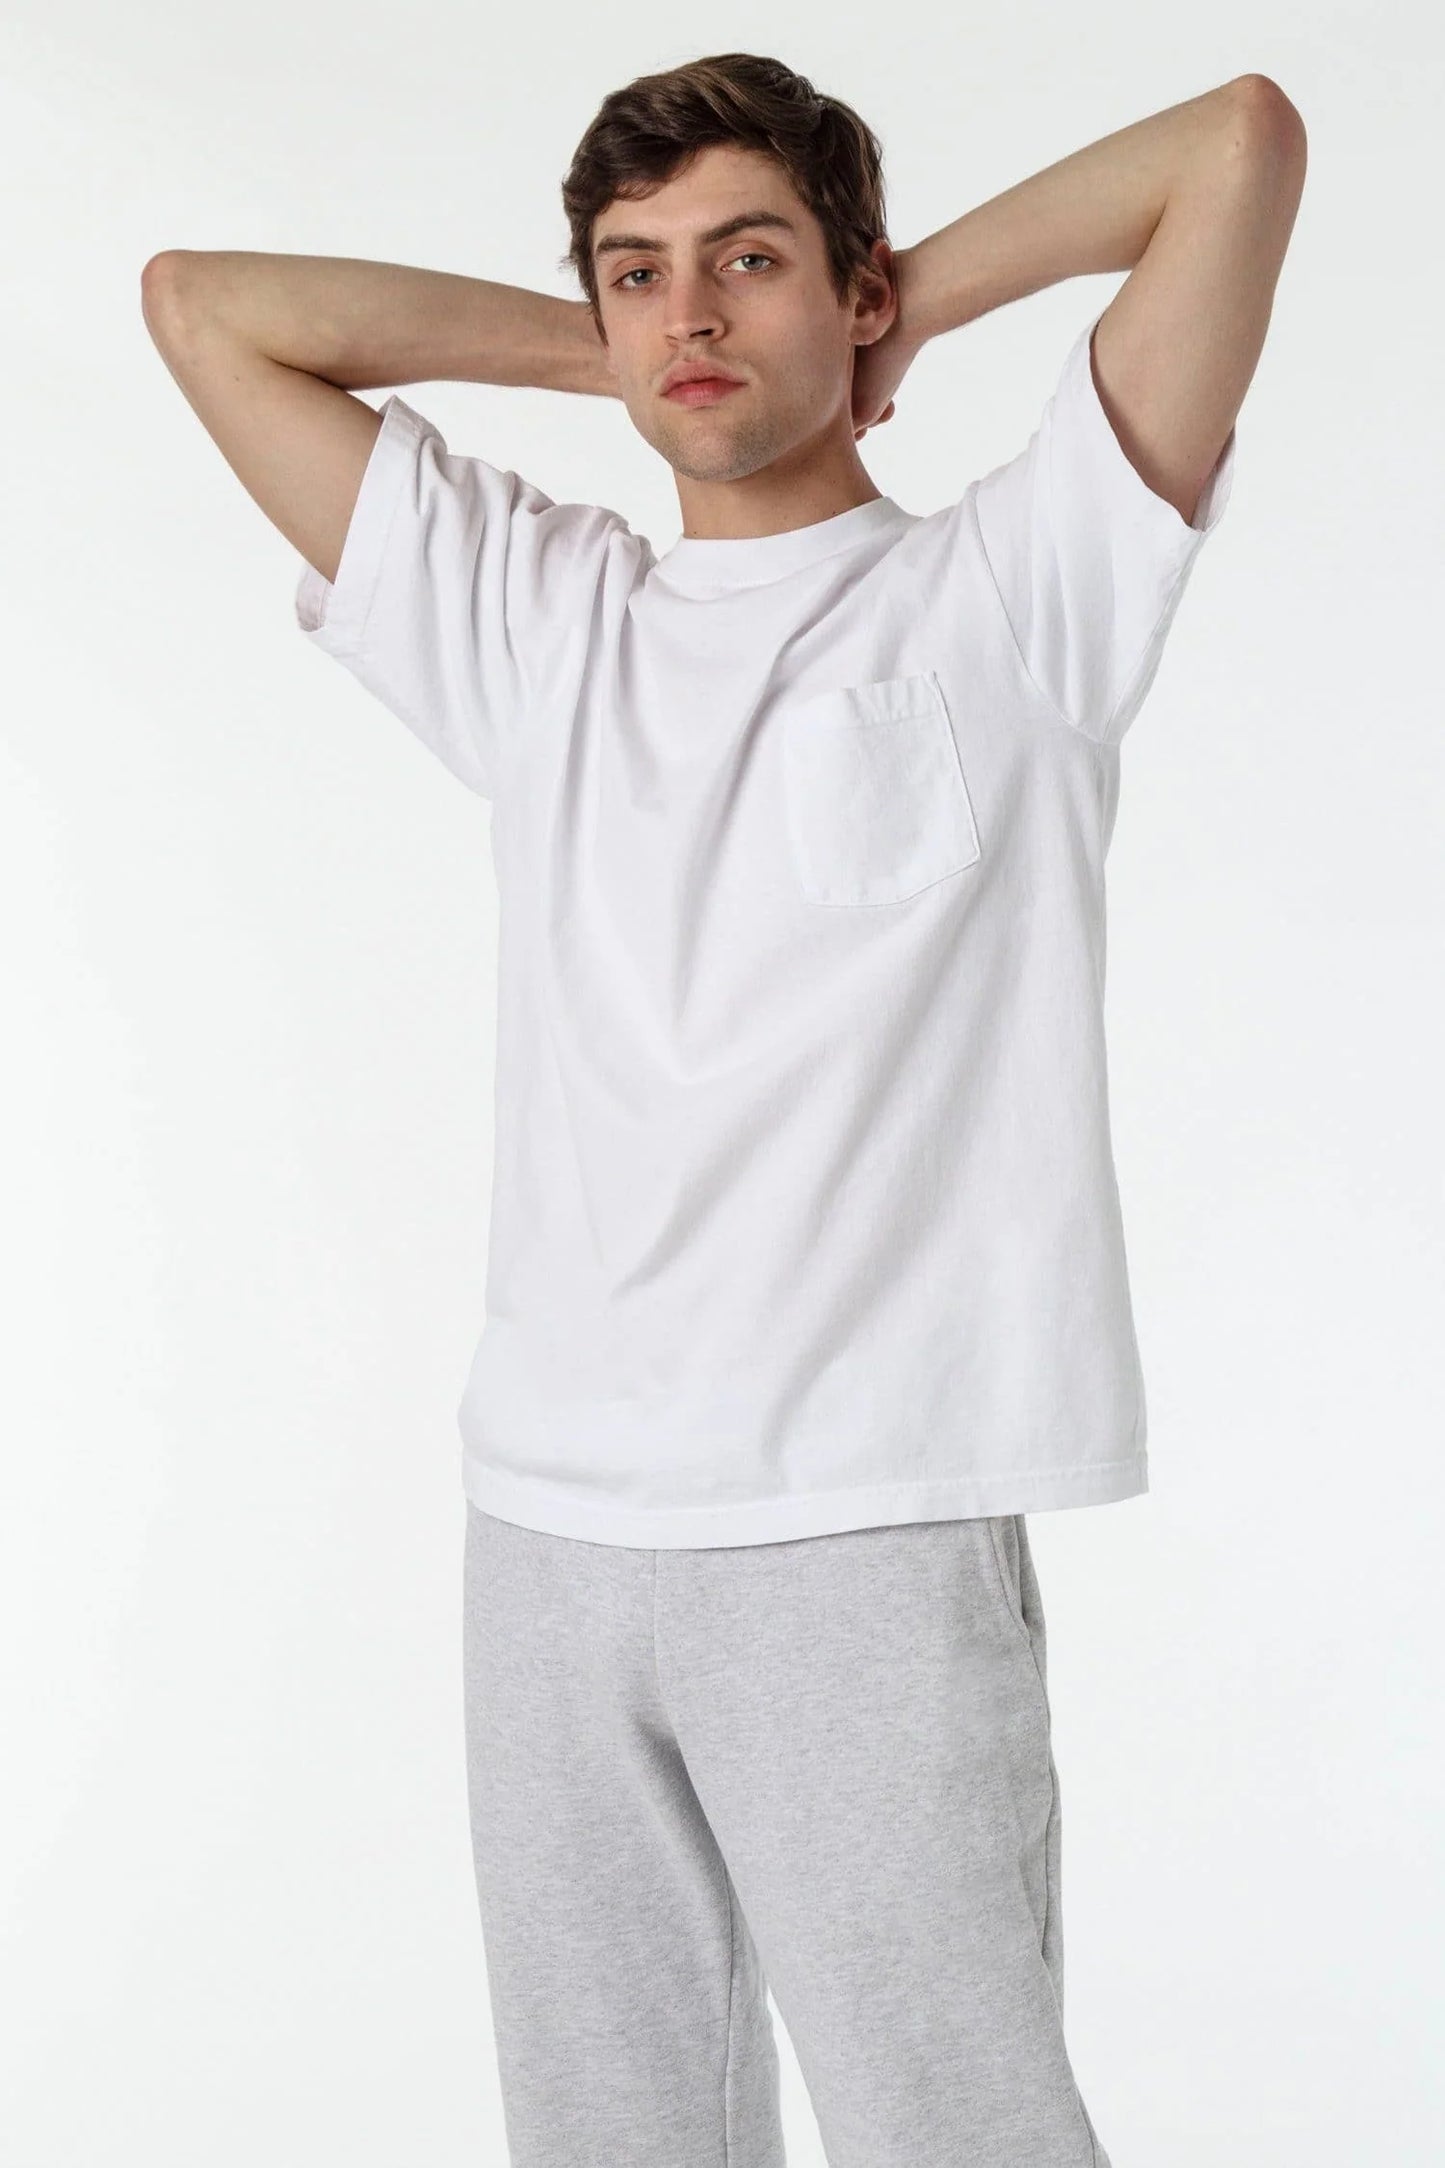 1809GD - Short Sleeve Garment Dye Pocket T-Shirt